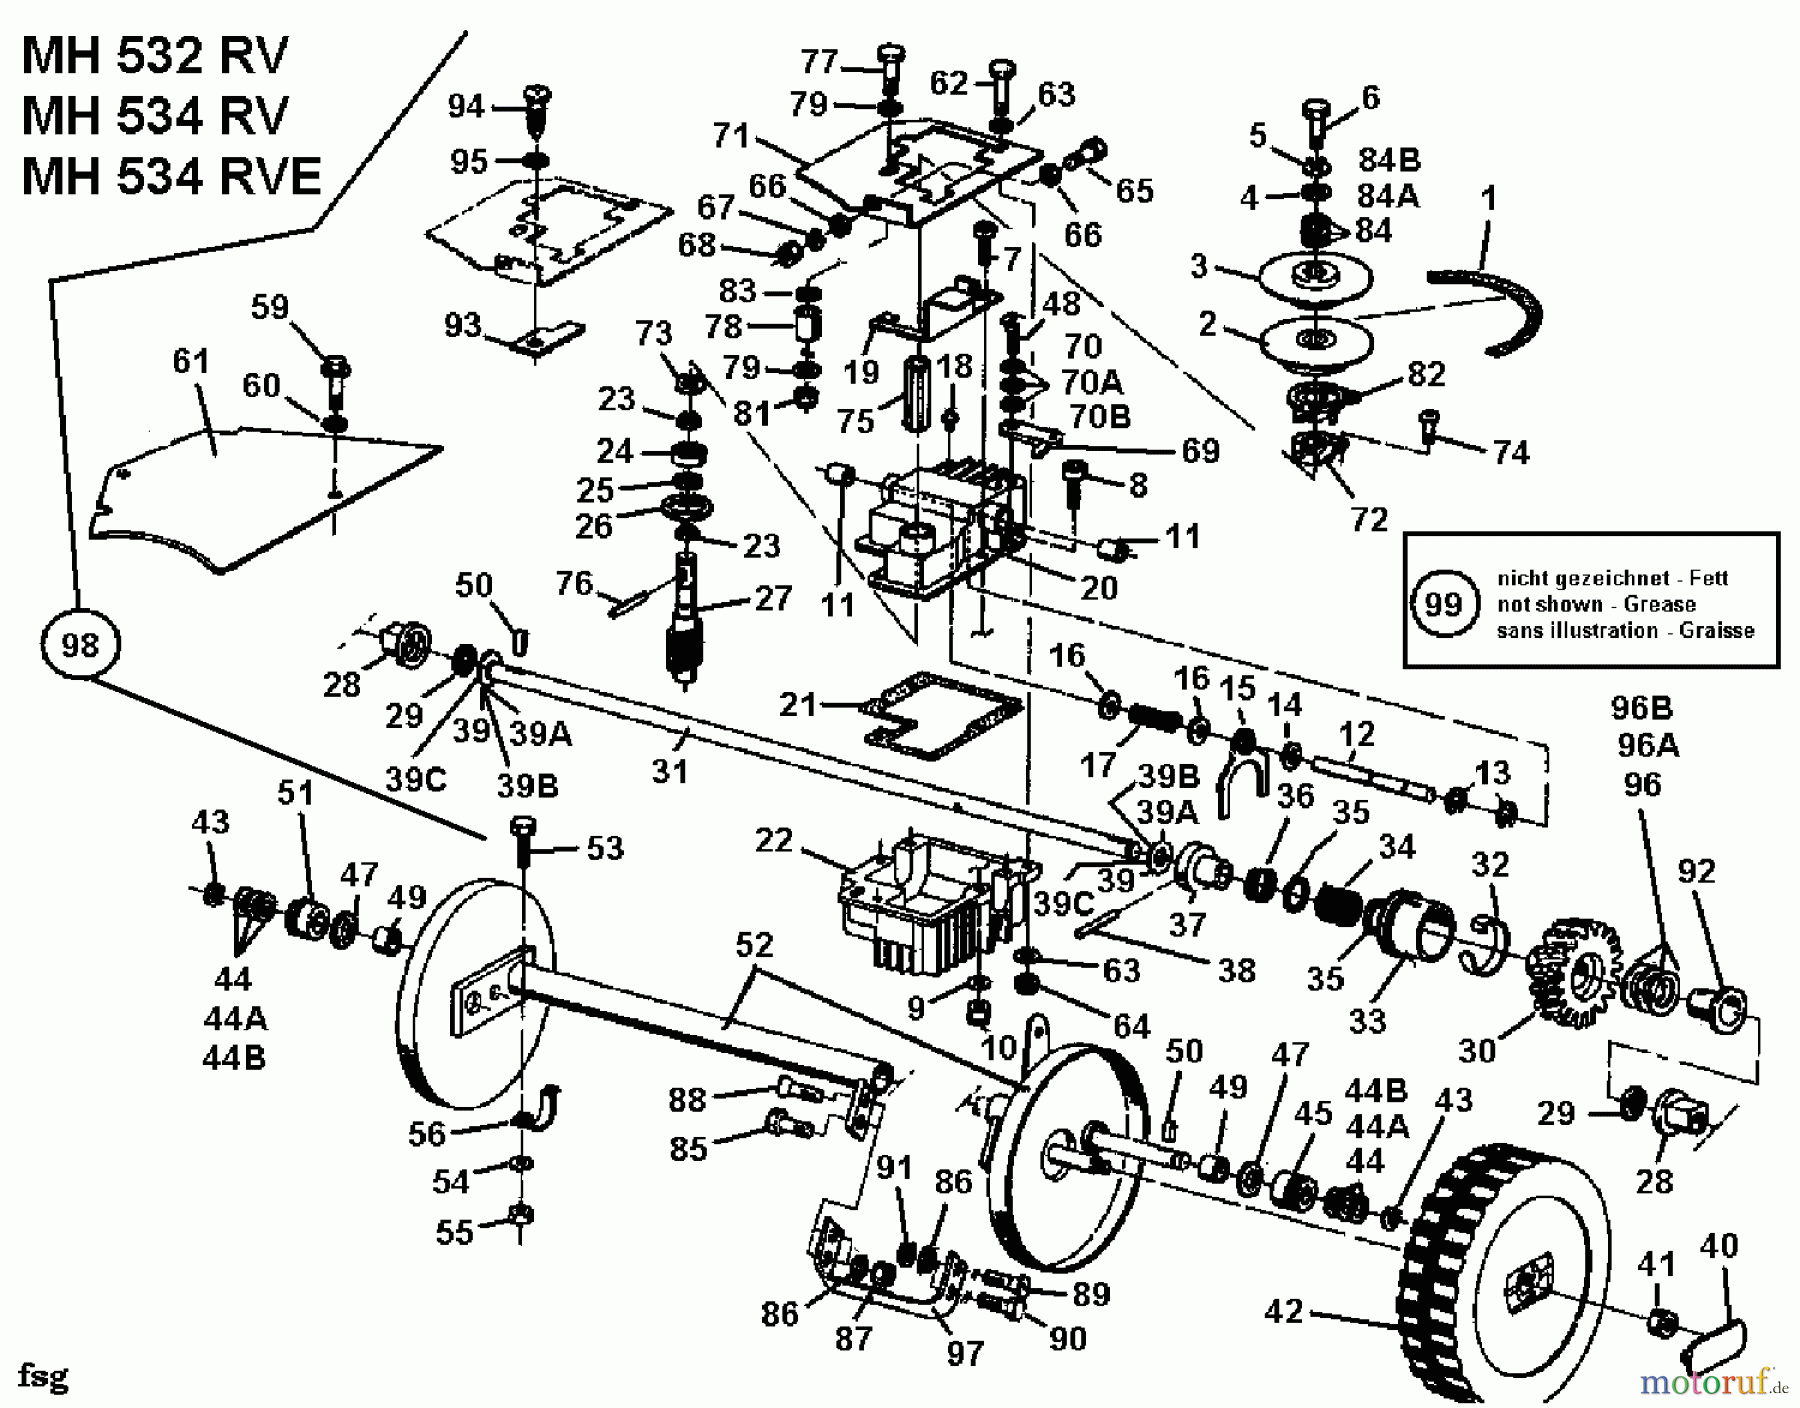  Gutbrod Motormäher mit Antrieb MH 534 RVE 04007.03  (1993) Getriebe, Räder